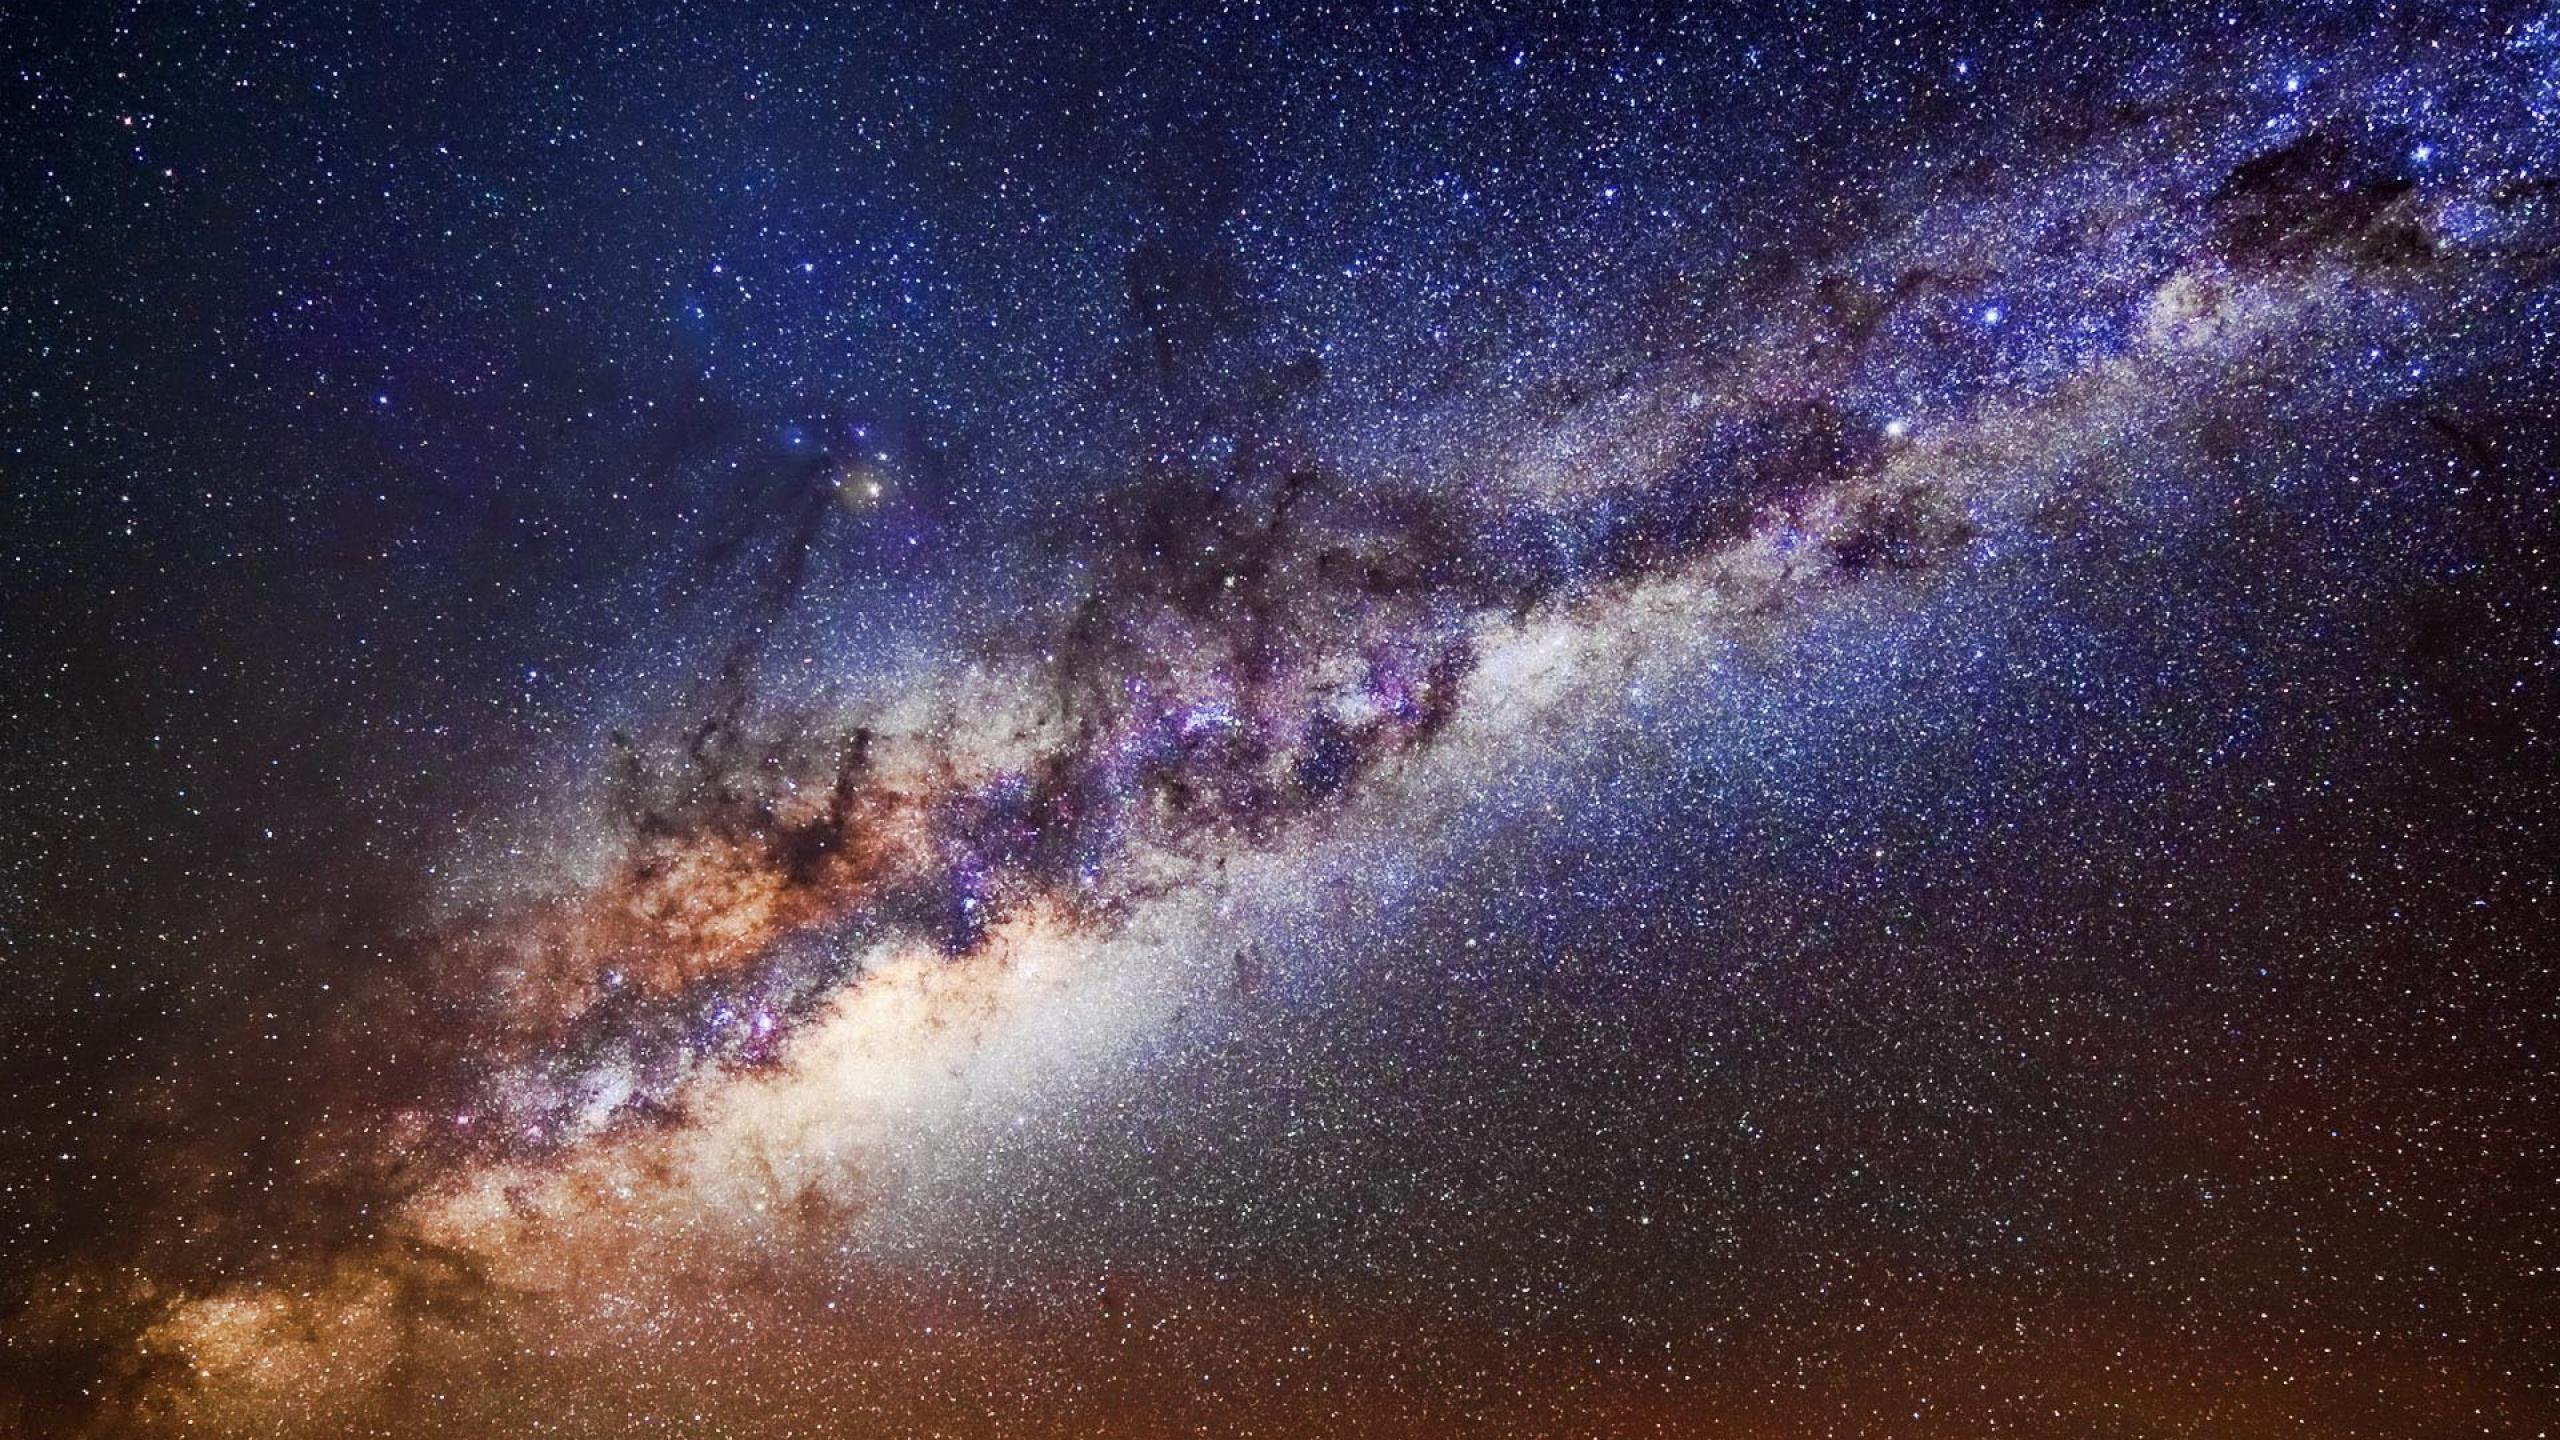 哈勃太空望远镜, 天文学, 气氛, 天文学对象, 银河系 壁纸 2560x1440 允许